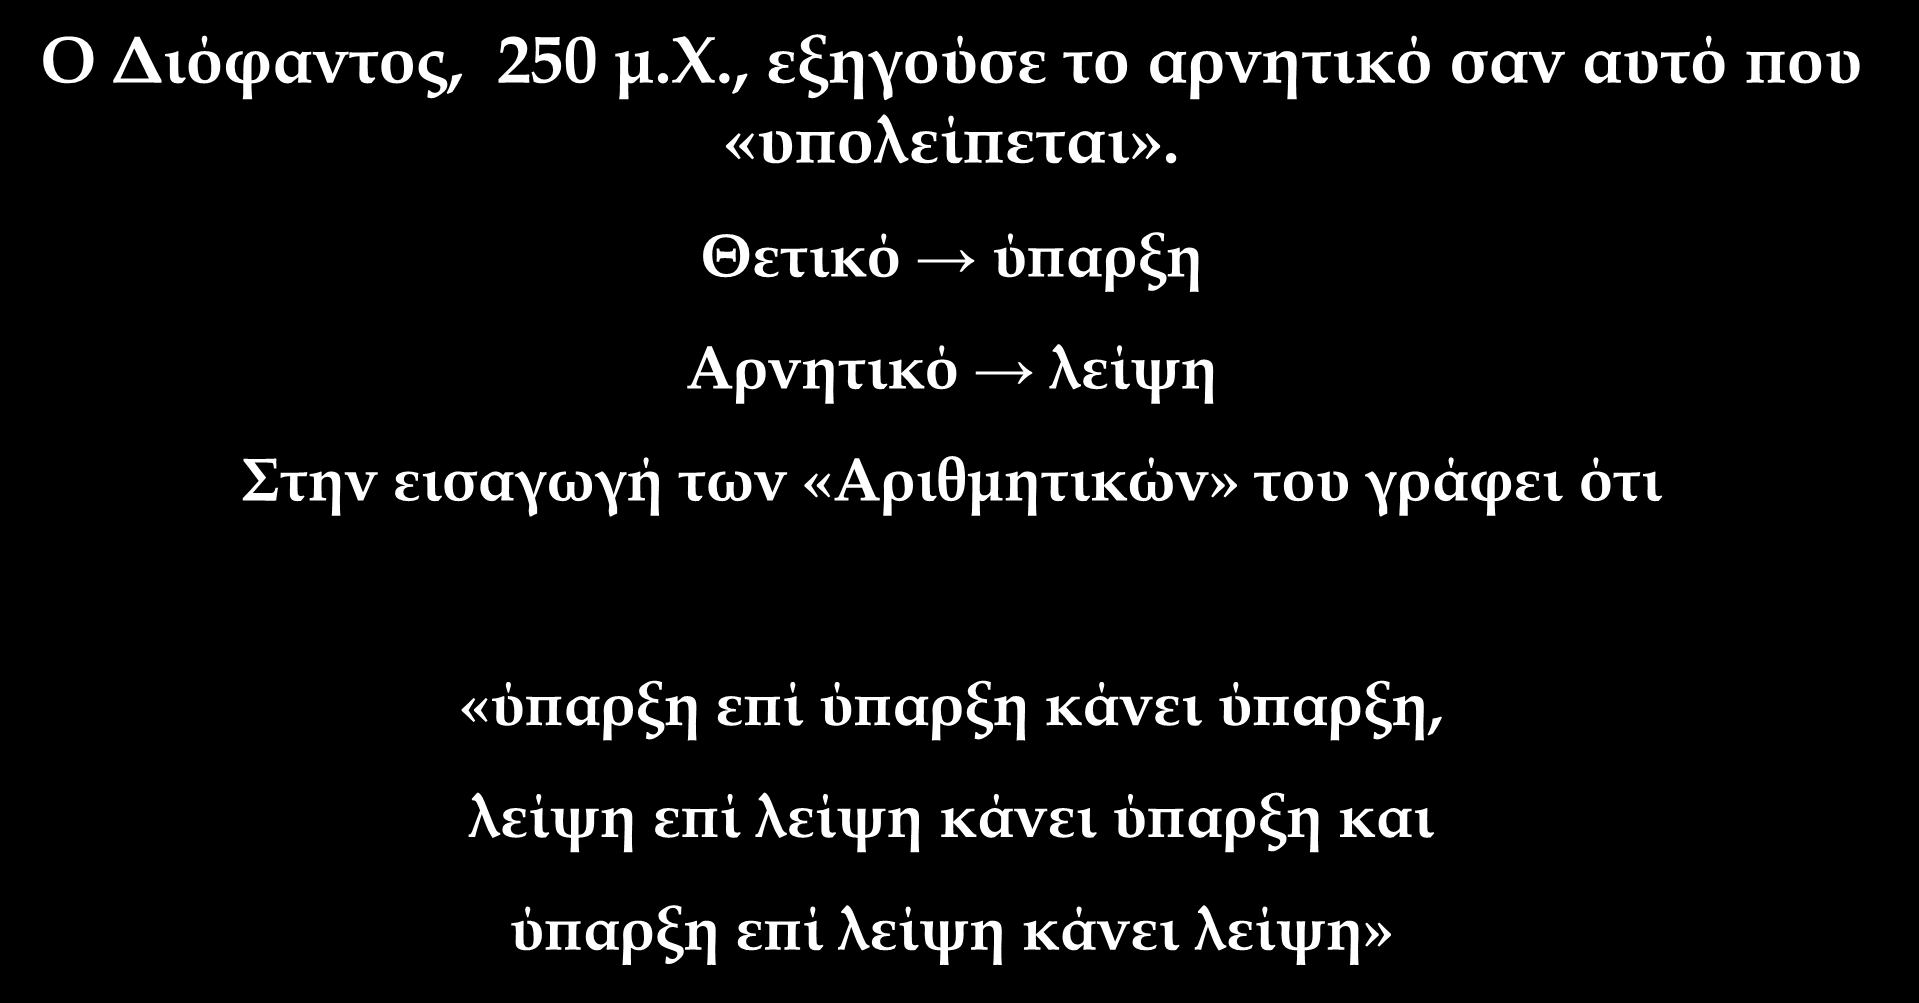 Ιστορική Αναδρομή Οι αρνητικοί αριθμοί παρά τη γνώση τους δεν νομιμοποιήθηκαν πριν περάσουν αρκετοί αιώνες Ο Οι Διόφαντος, Αιγύπτιοι 250 δεν μ.φ., αναφέρουν εξηγούσε τους αρνητικούς αρνητικό σαν αριθμούς.